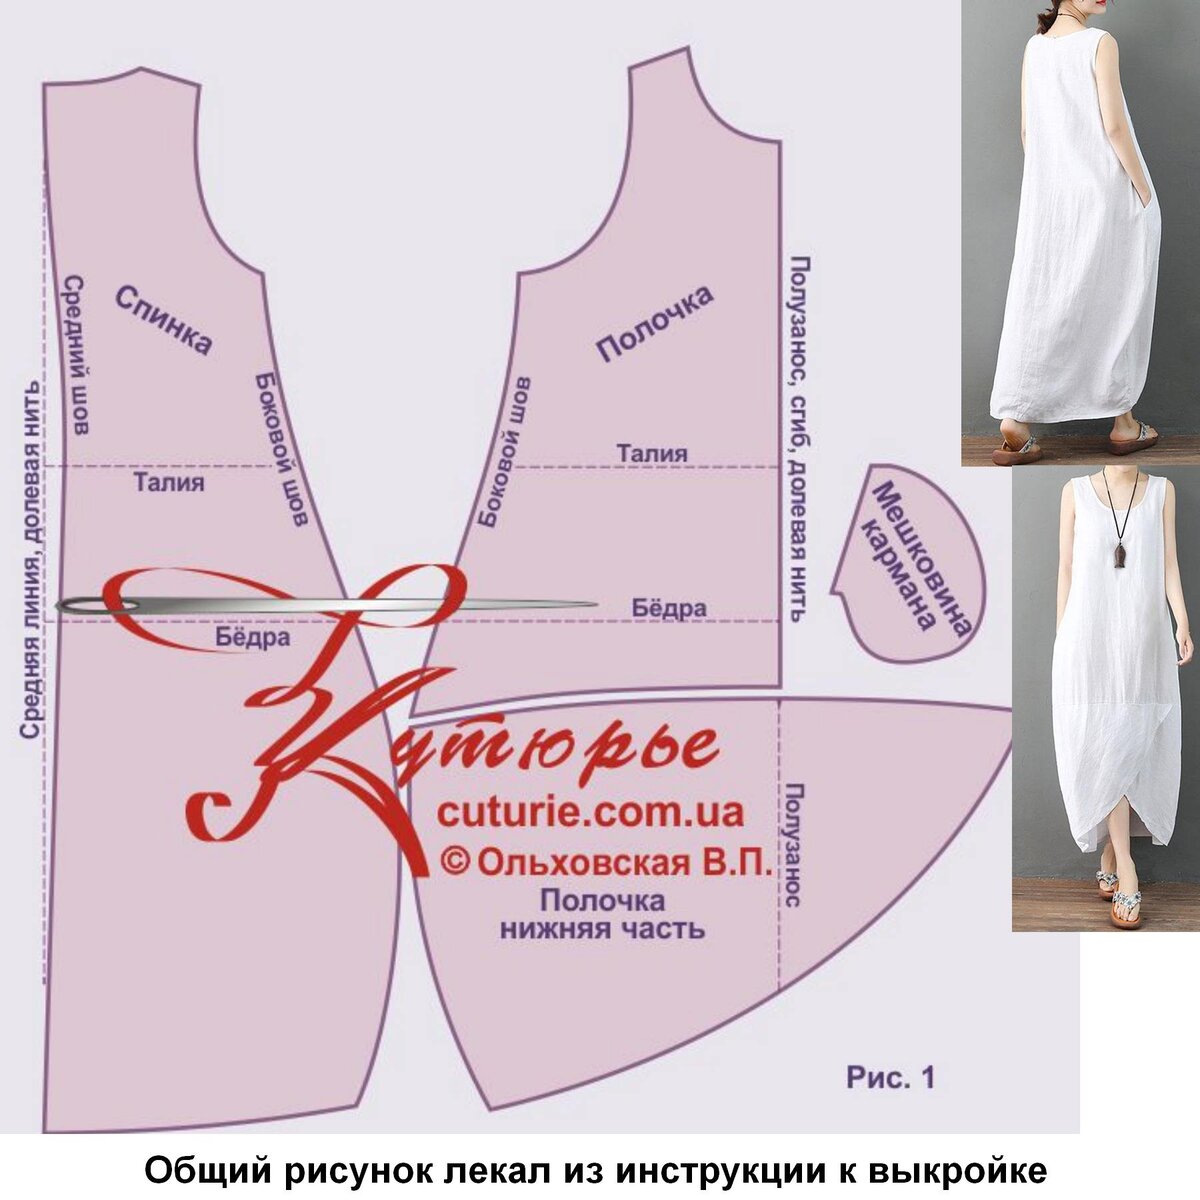 Платье в греческом стиле своими руками